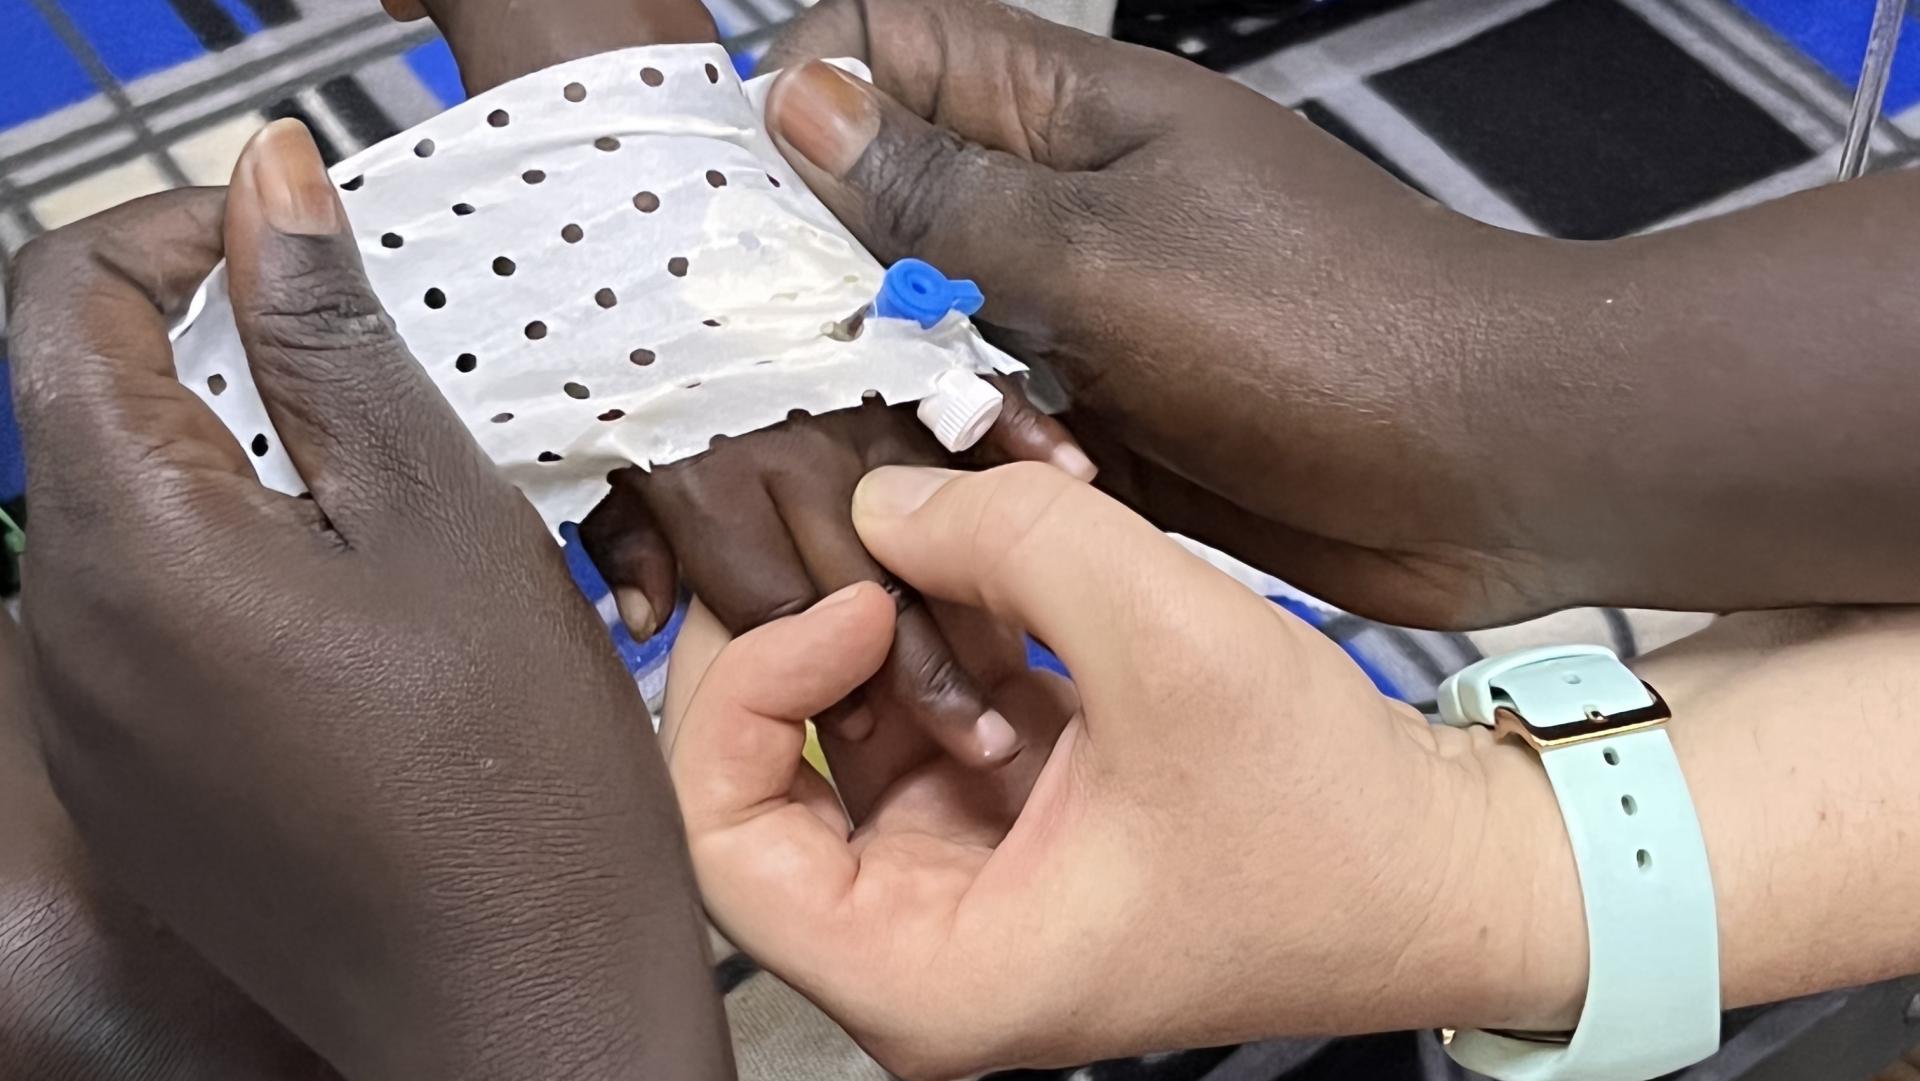 Projet Burkina qualité des soins